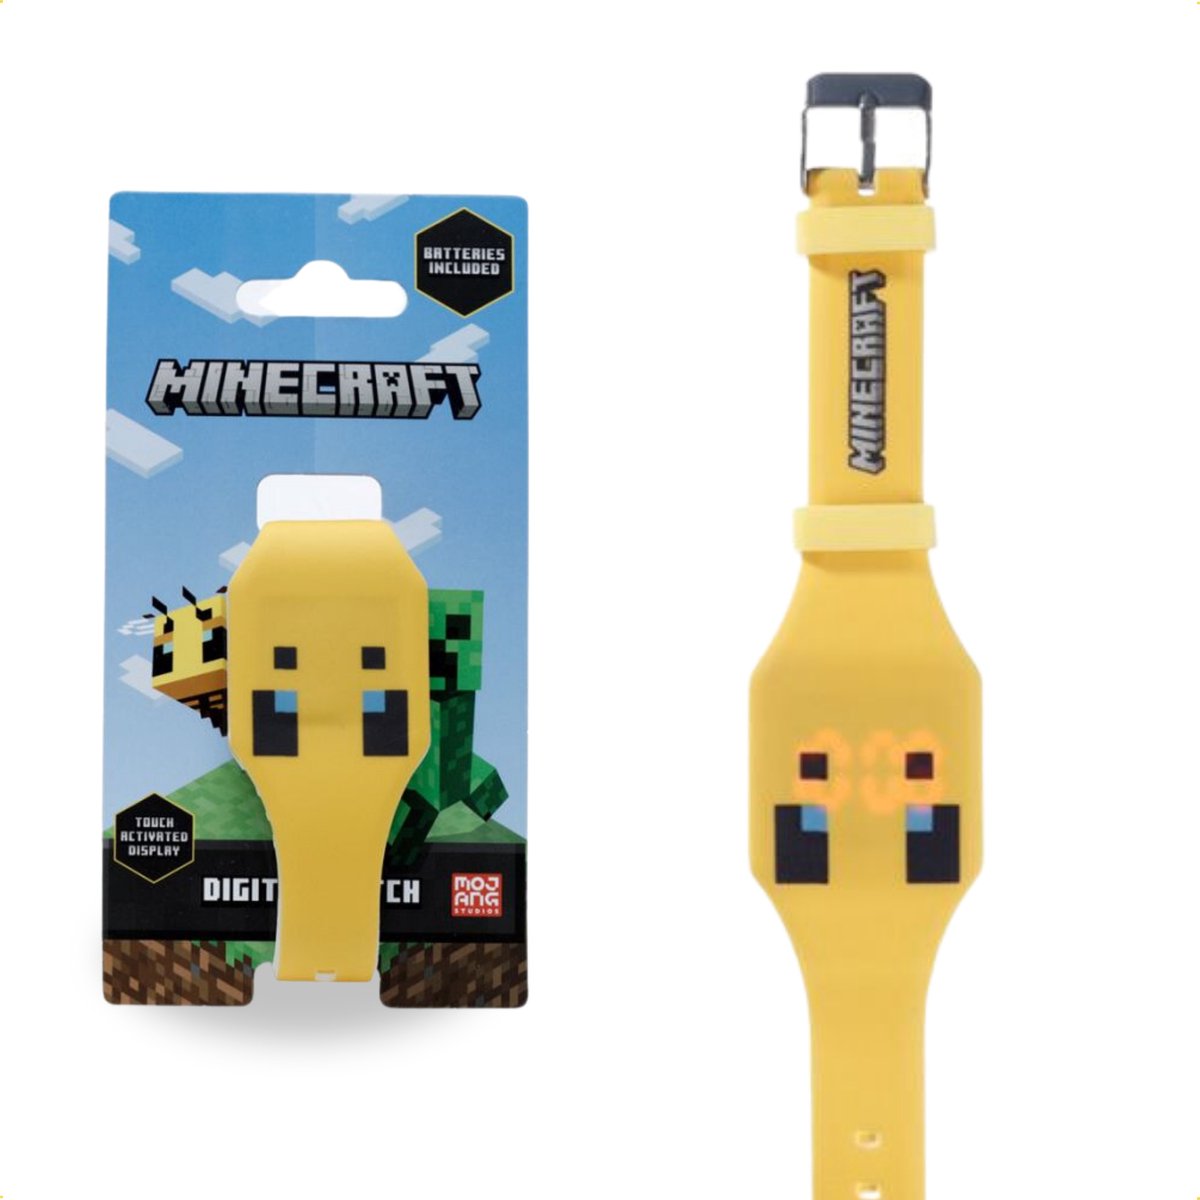 Minecraft Horloge - Met Silliconen band - Kinderhorloge - Digitale tijd - Datum en Tijd - Geel